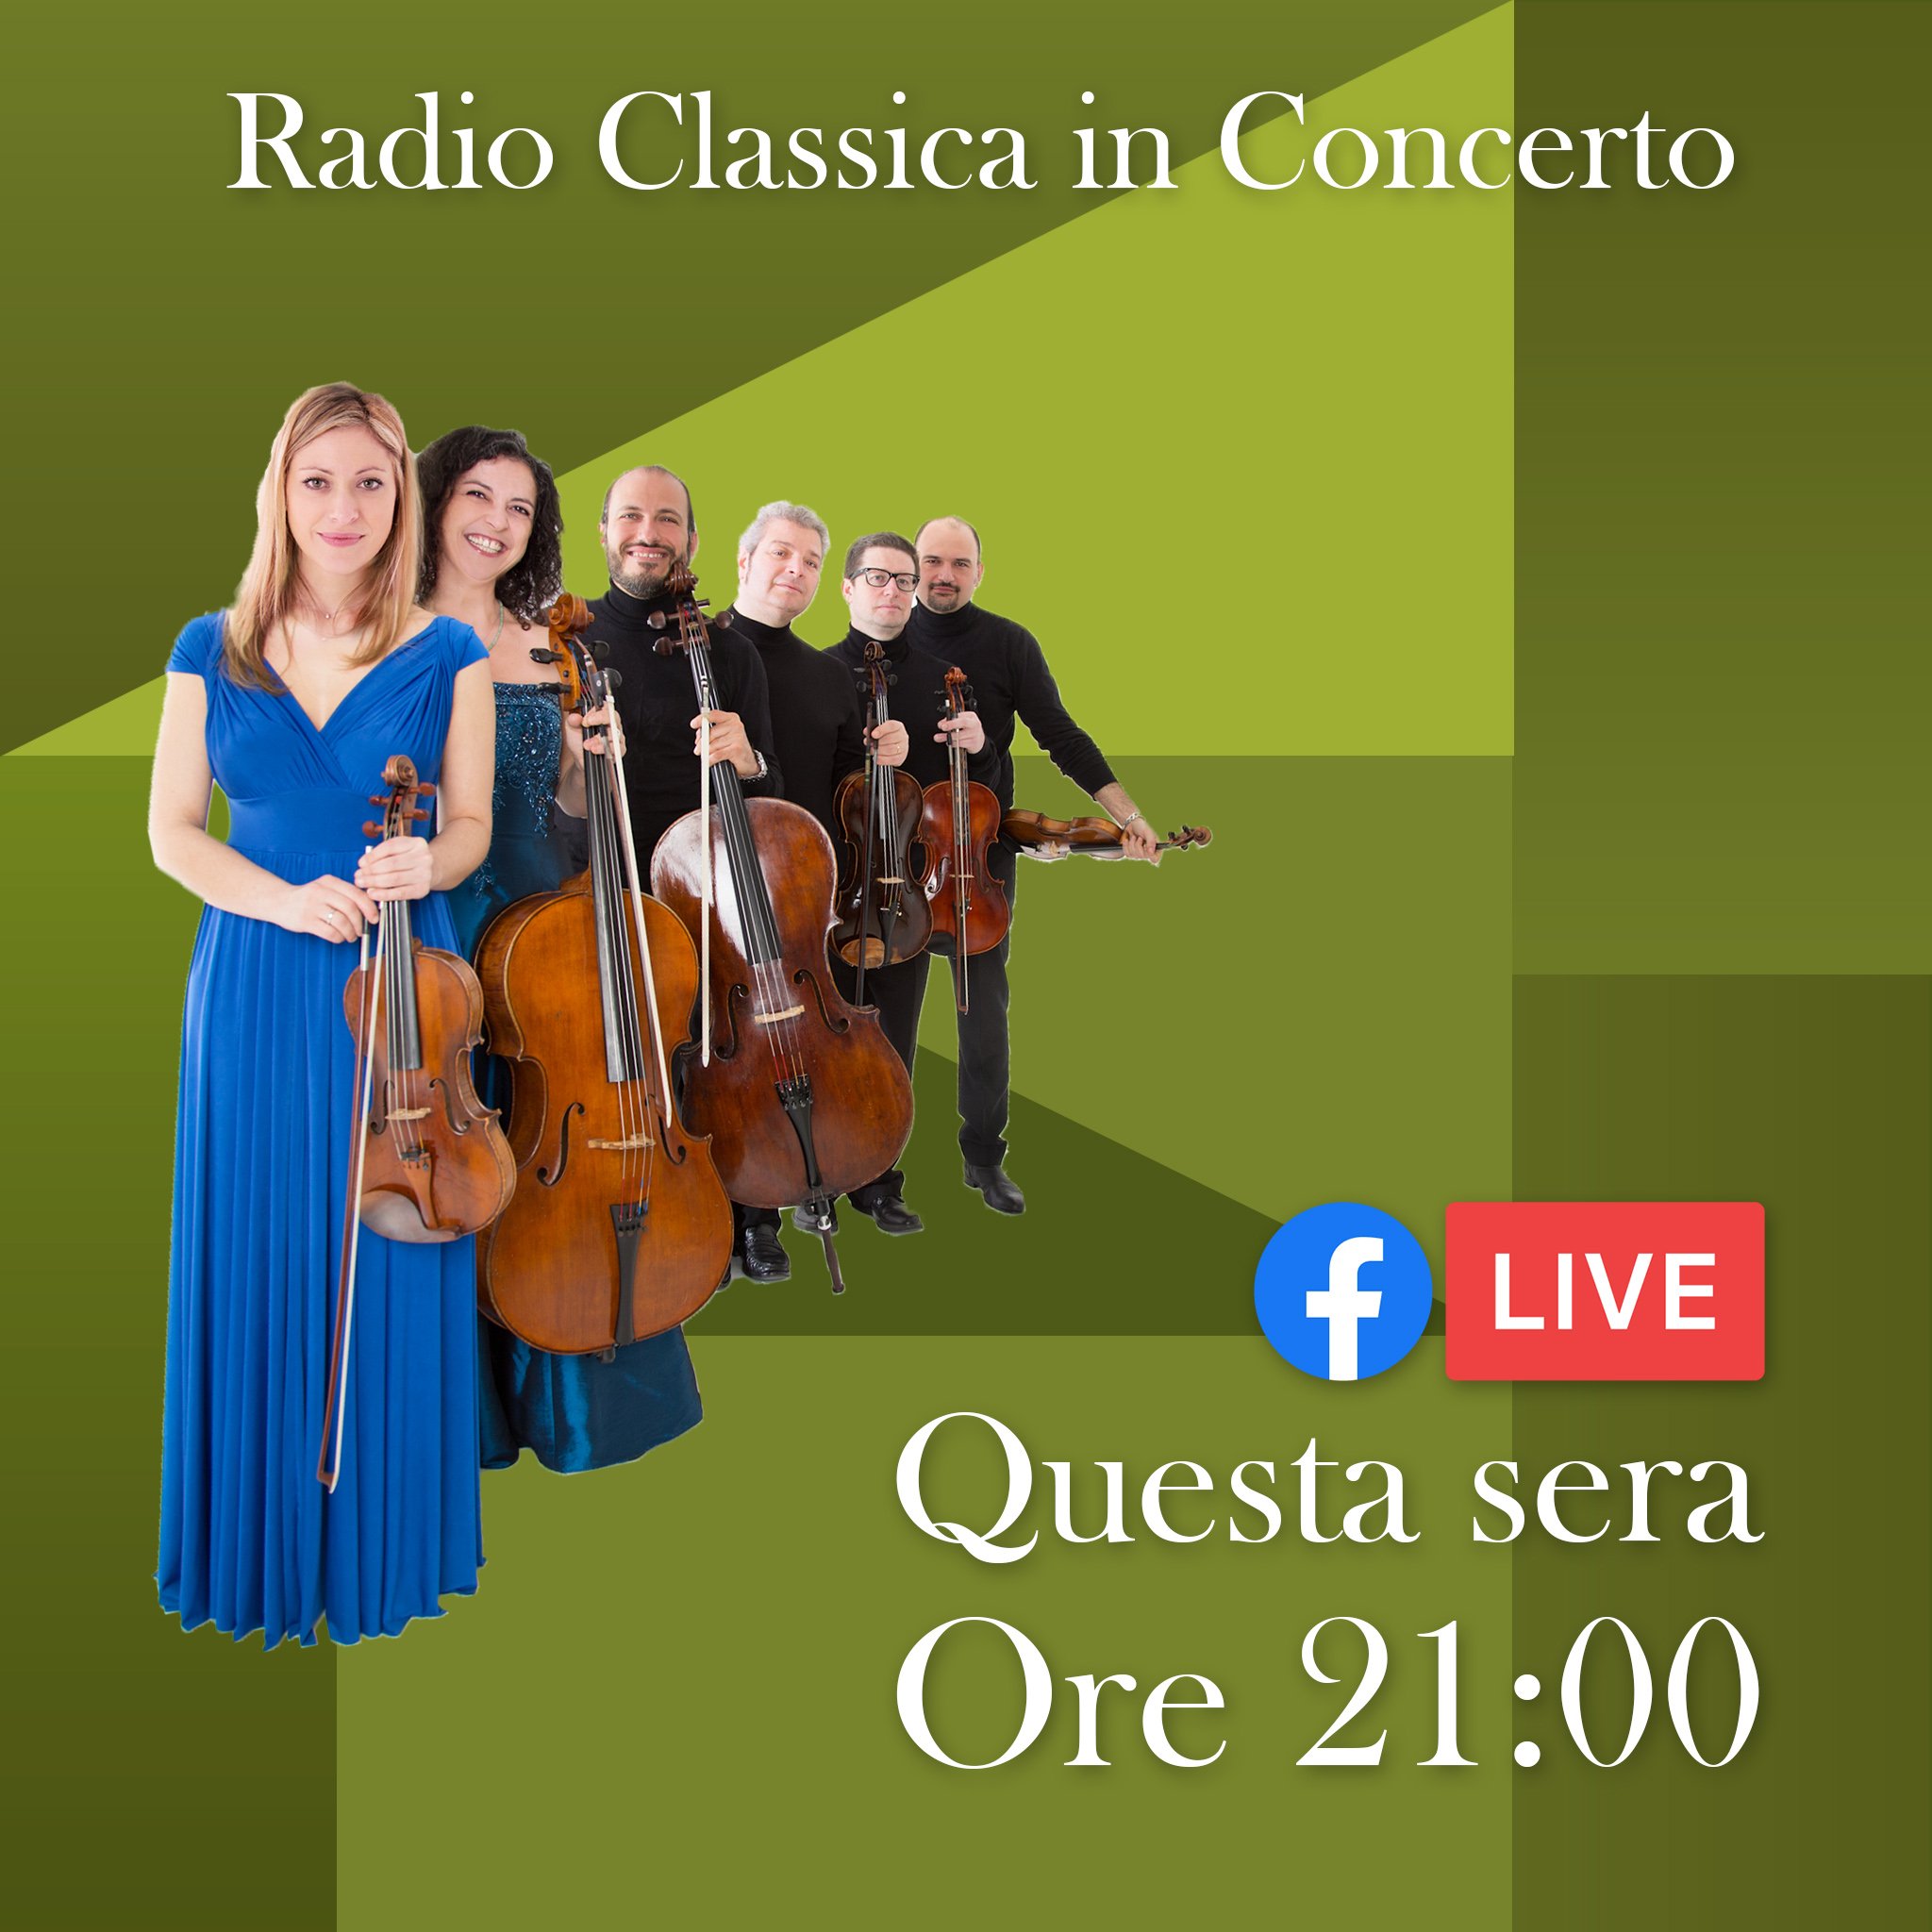 Radio 3 Classica (@Radio3Classica) / Twitter